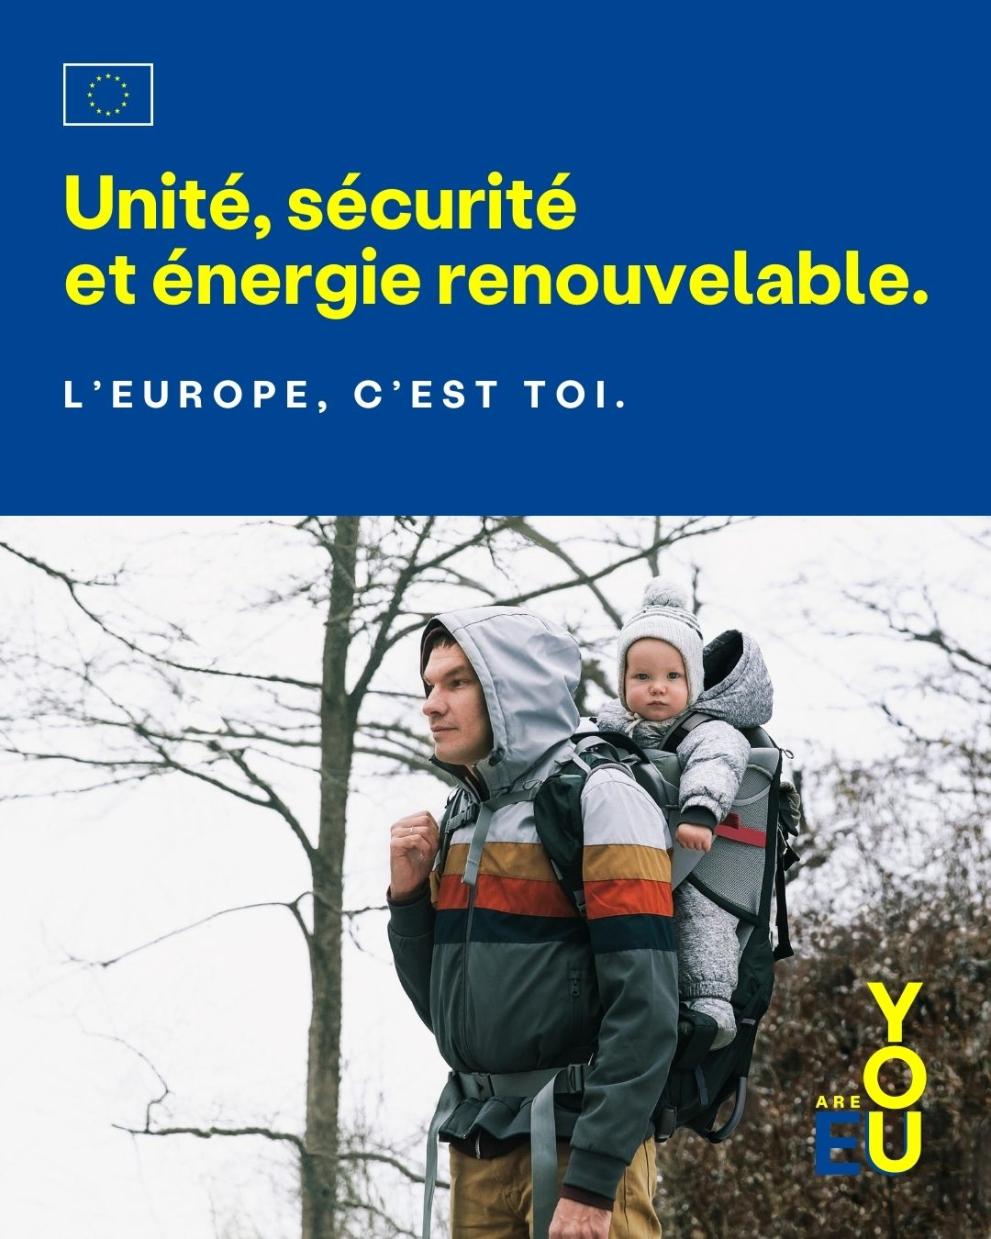 Unité, sécurité et énergie renouvelable.